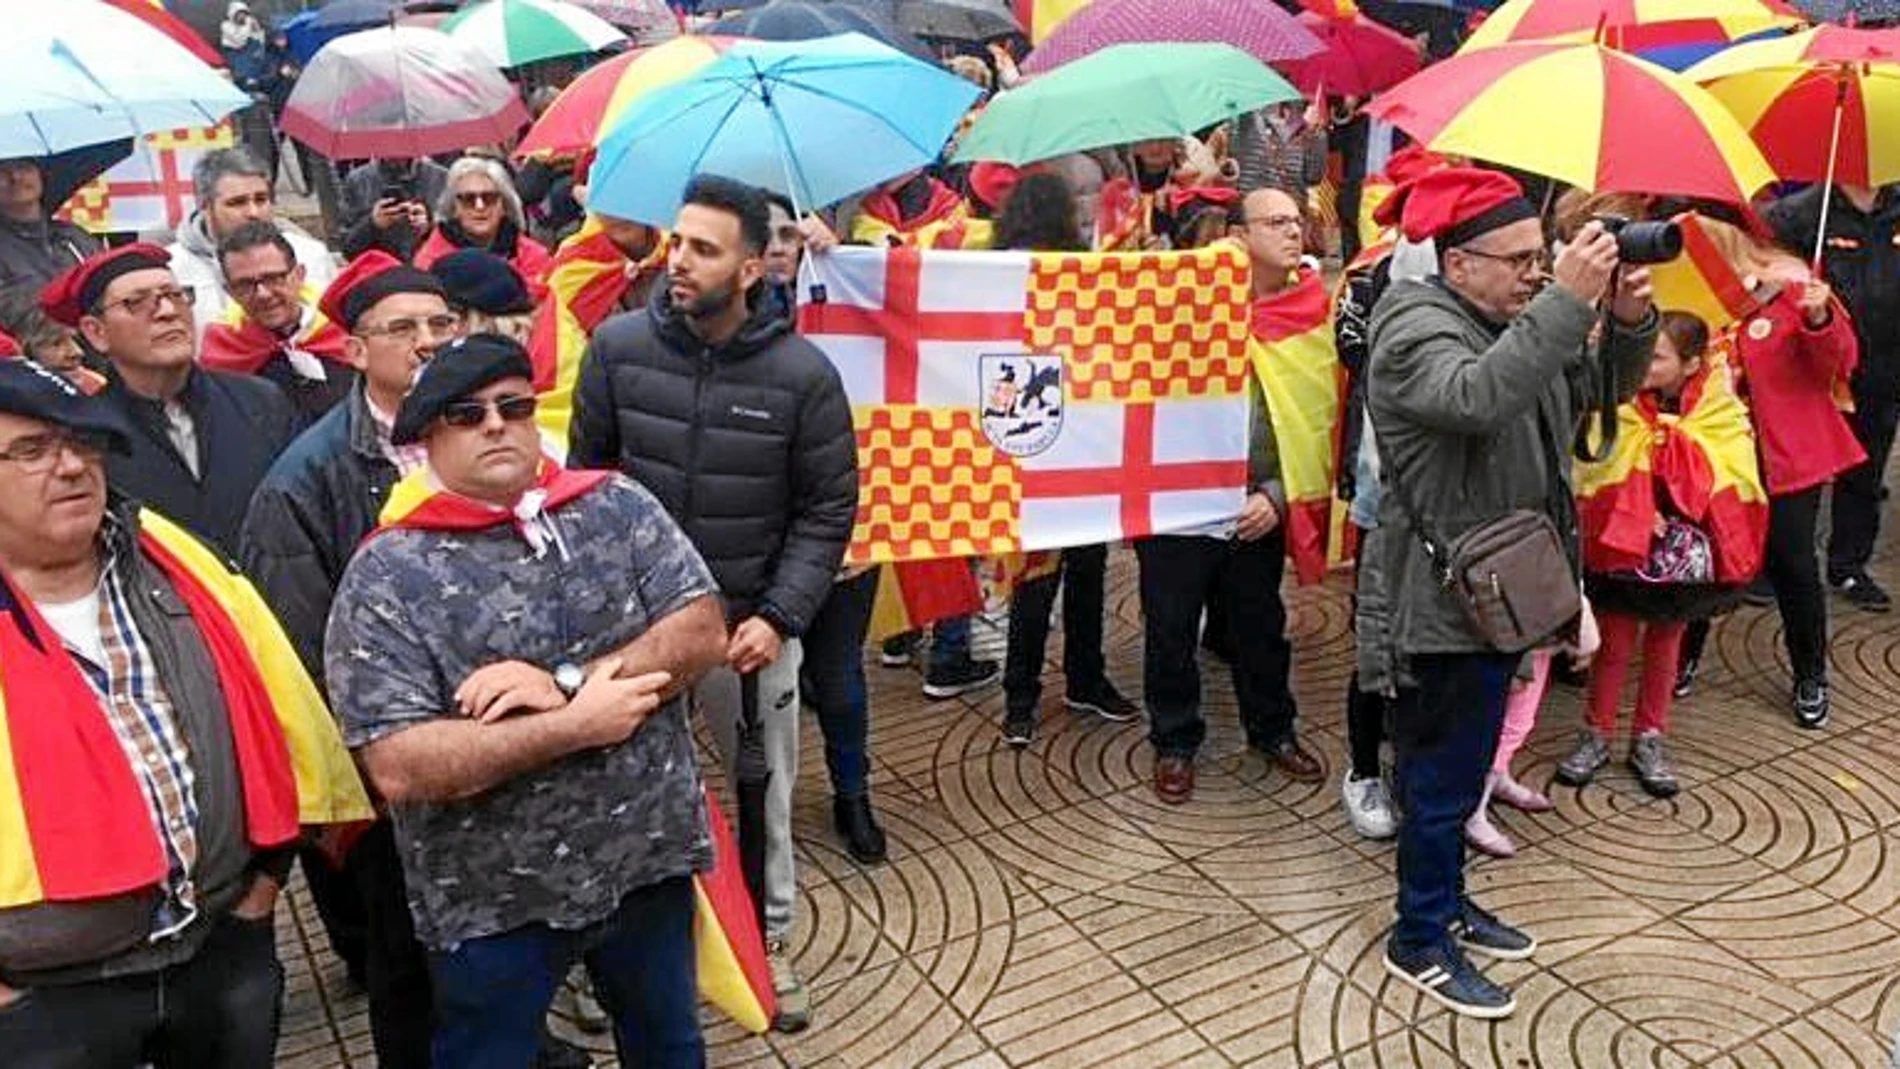 Los asistentes al acto celebrado en una céntrica plaza de Reus iban ataviados con todo tipo de banderas y símbolos